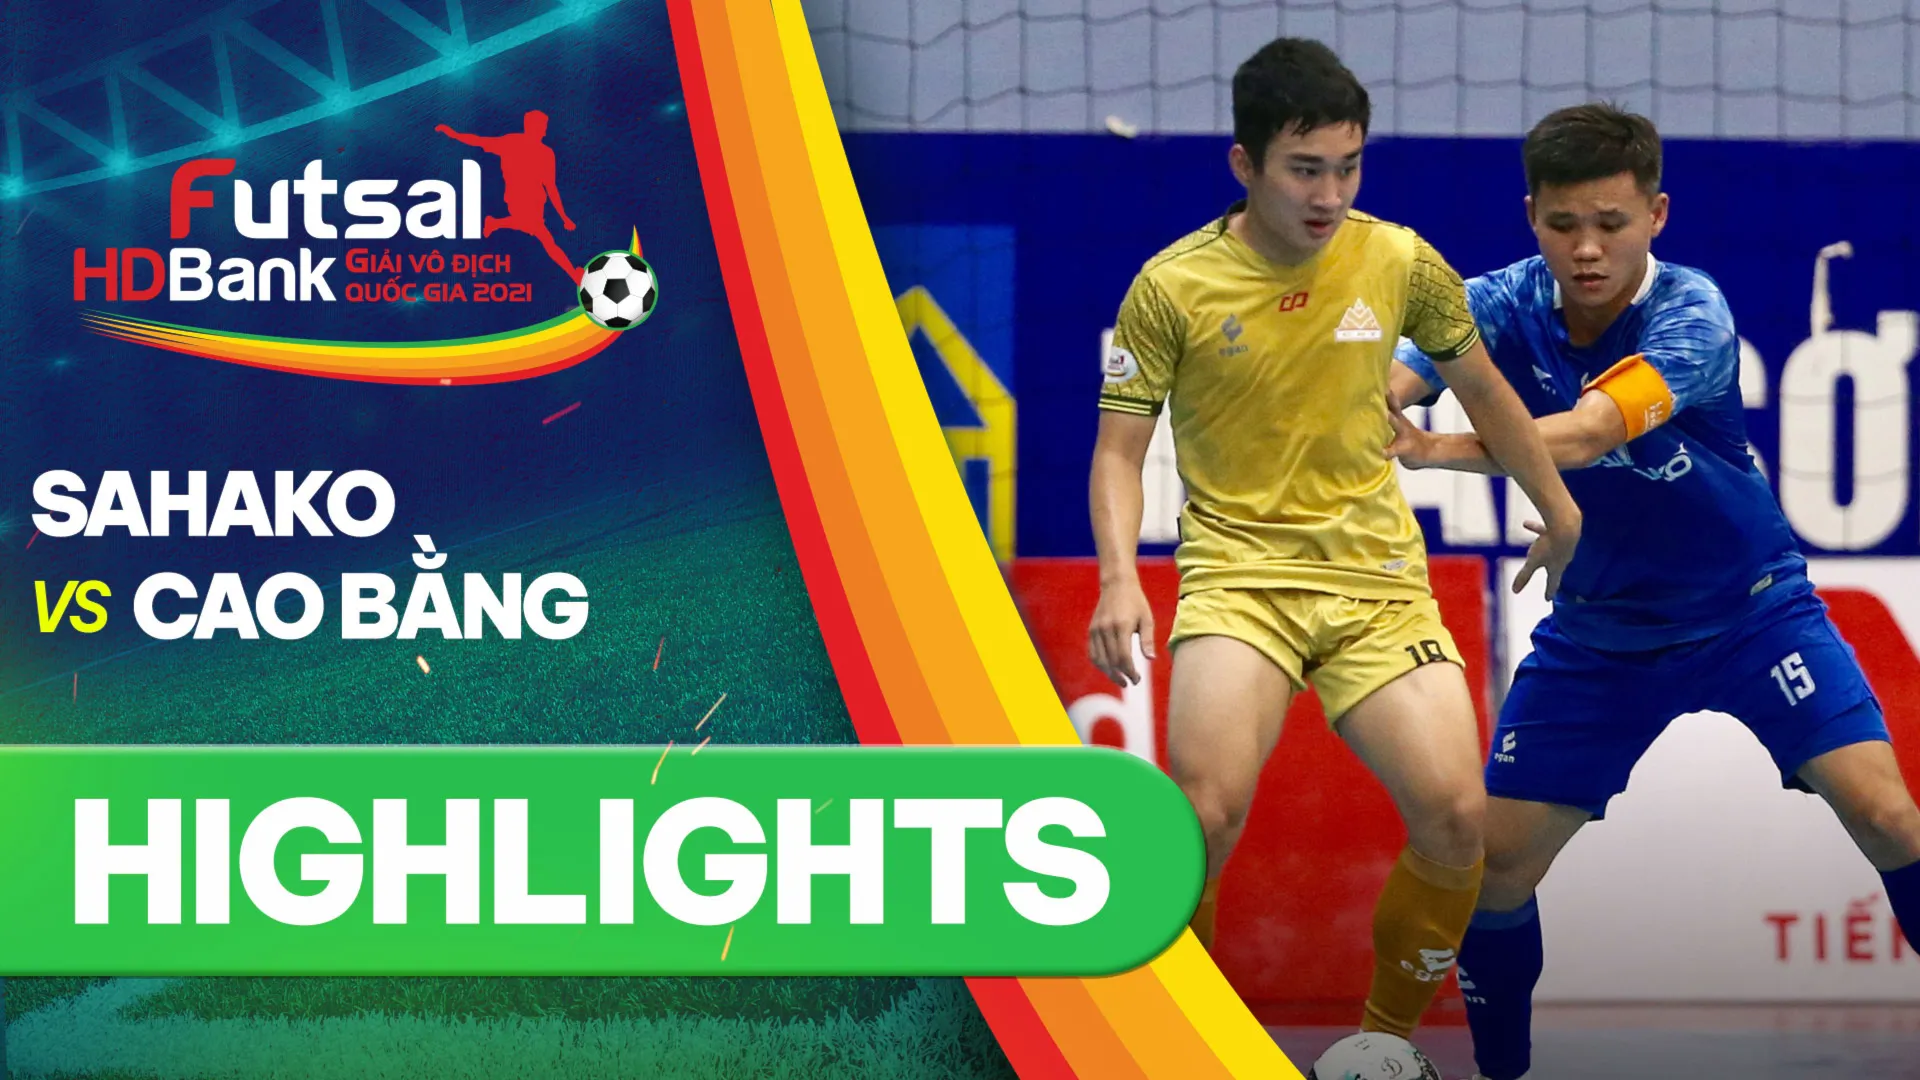 Highlights Sahako - Cao Bằng (Lượt về Futsal VĐQG 2021)